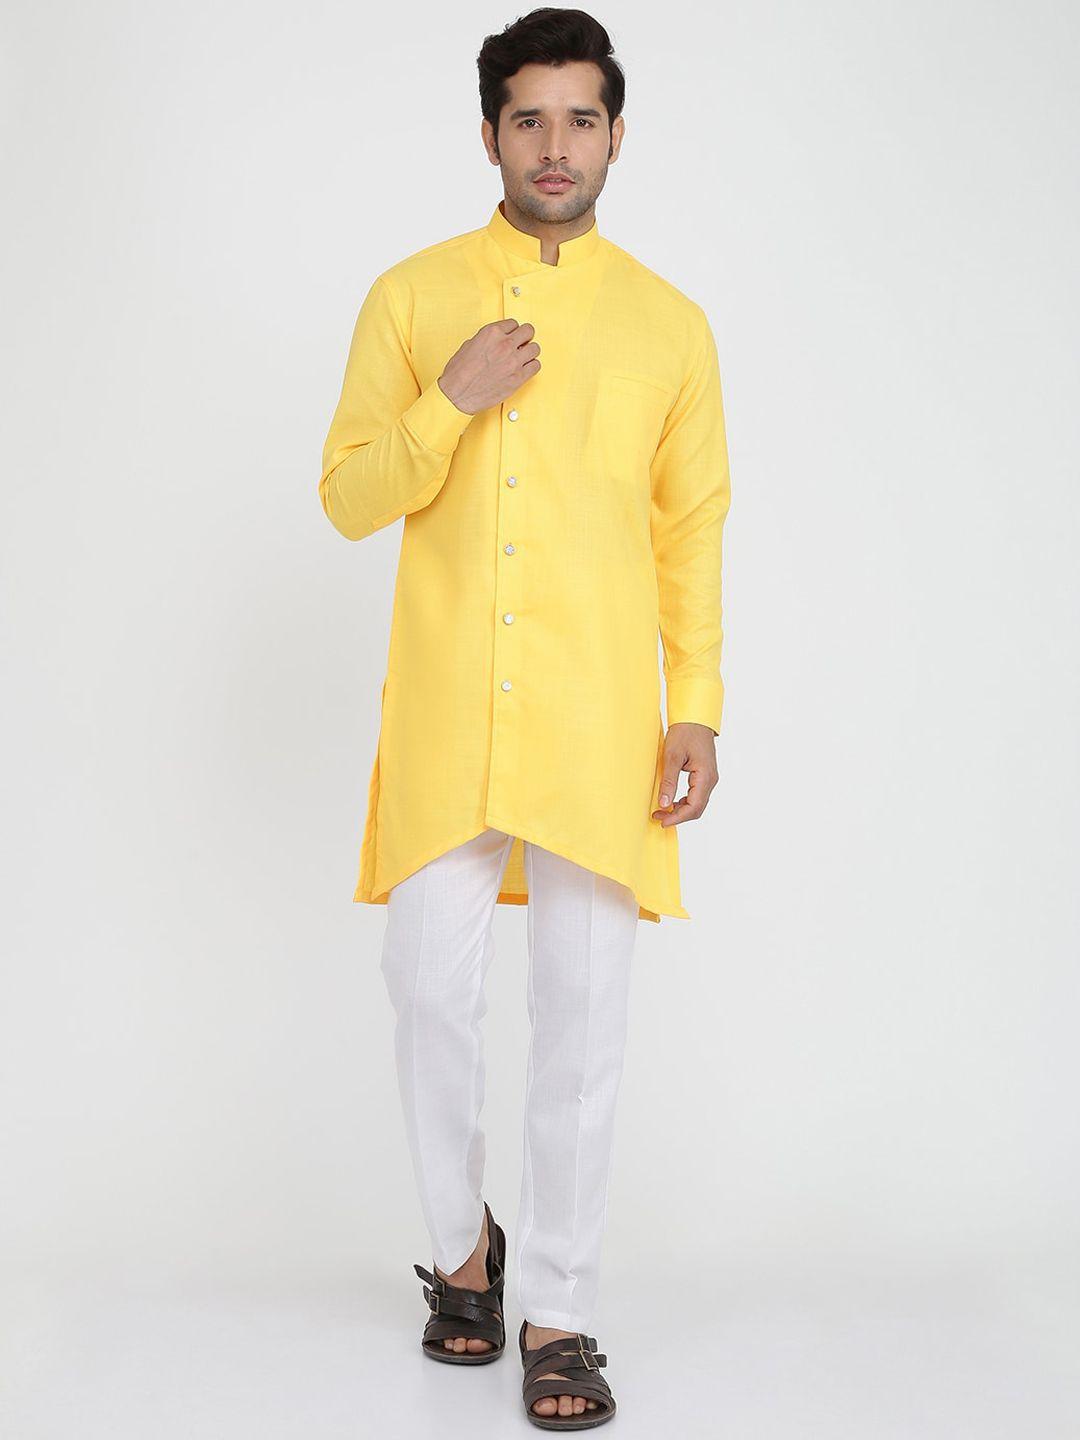 royal kurta men yellow layered pure cotton kurta with trousers